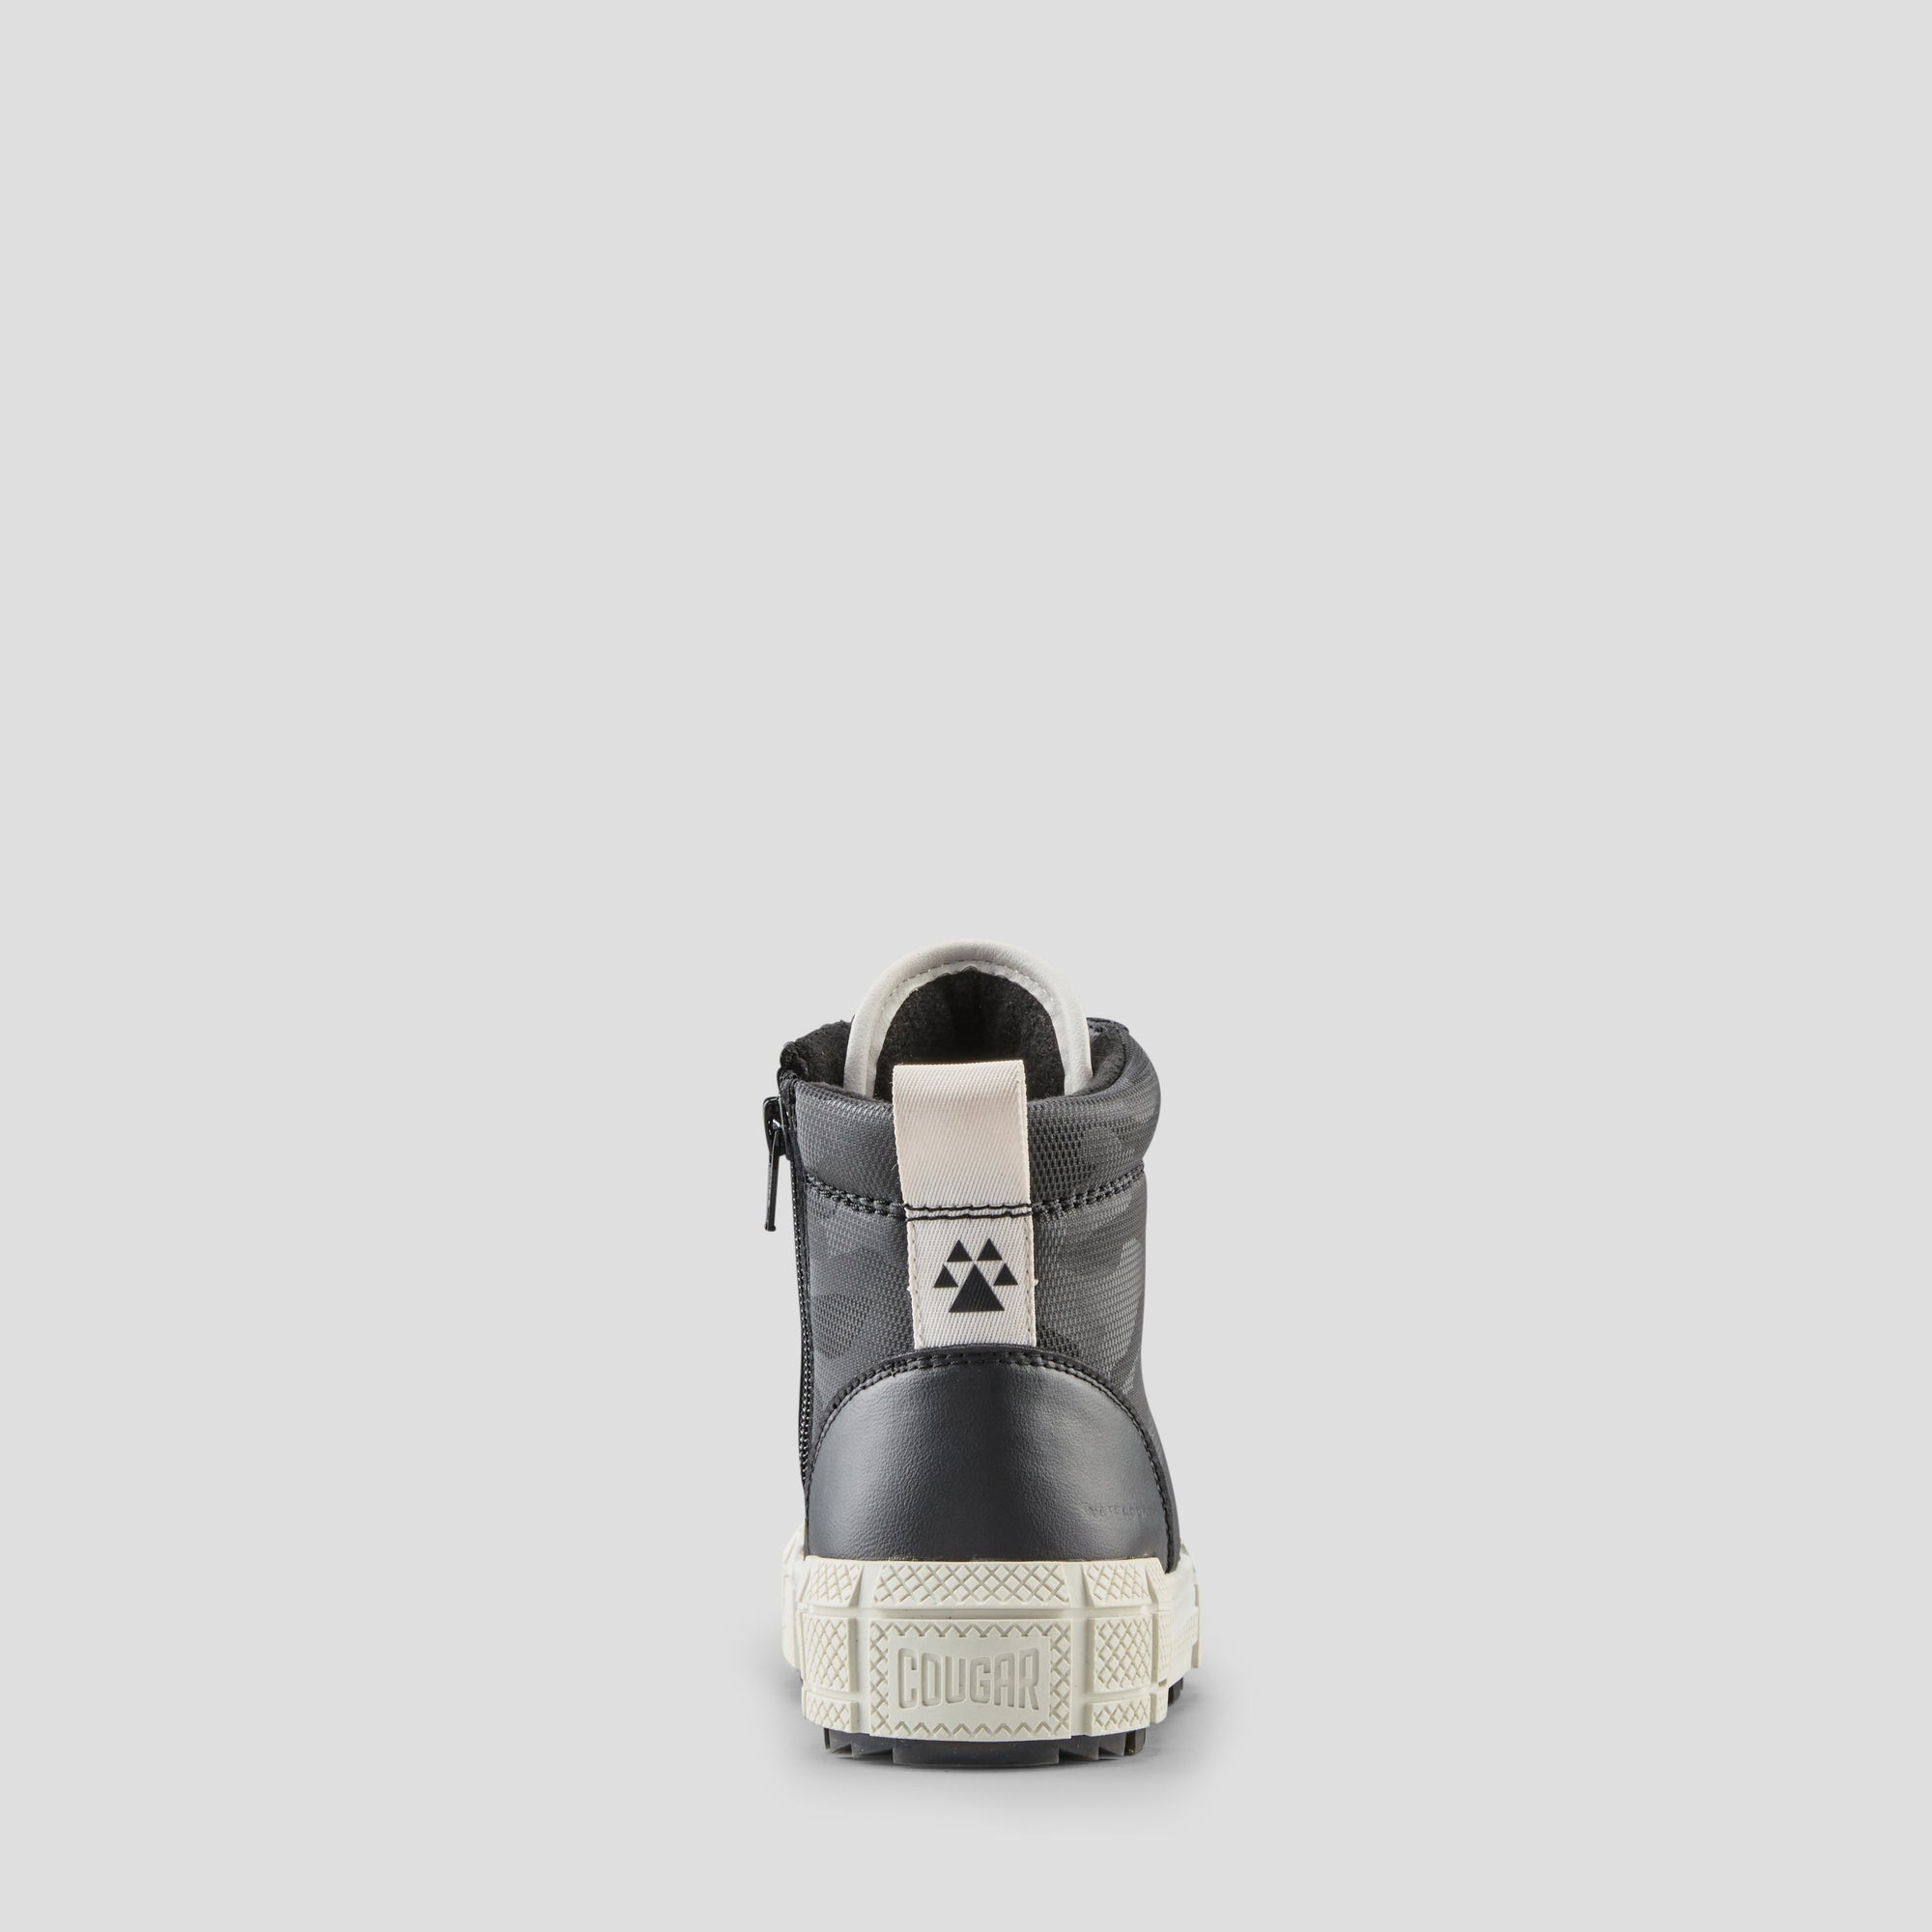 Brave Camo - Bottes d'hiver imperméables en cuir synthétique (Junior+) - Colour Black-White